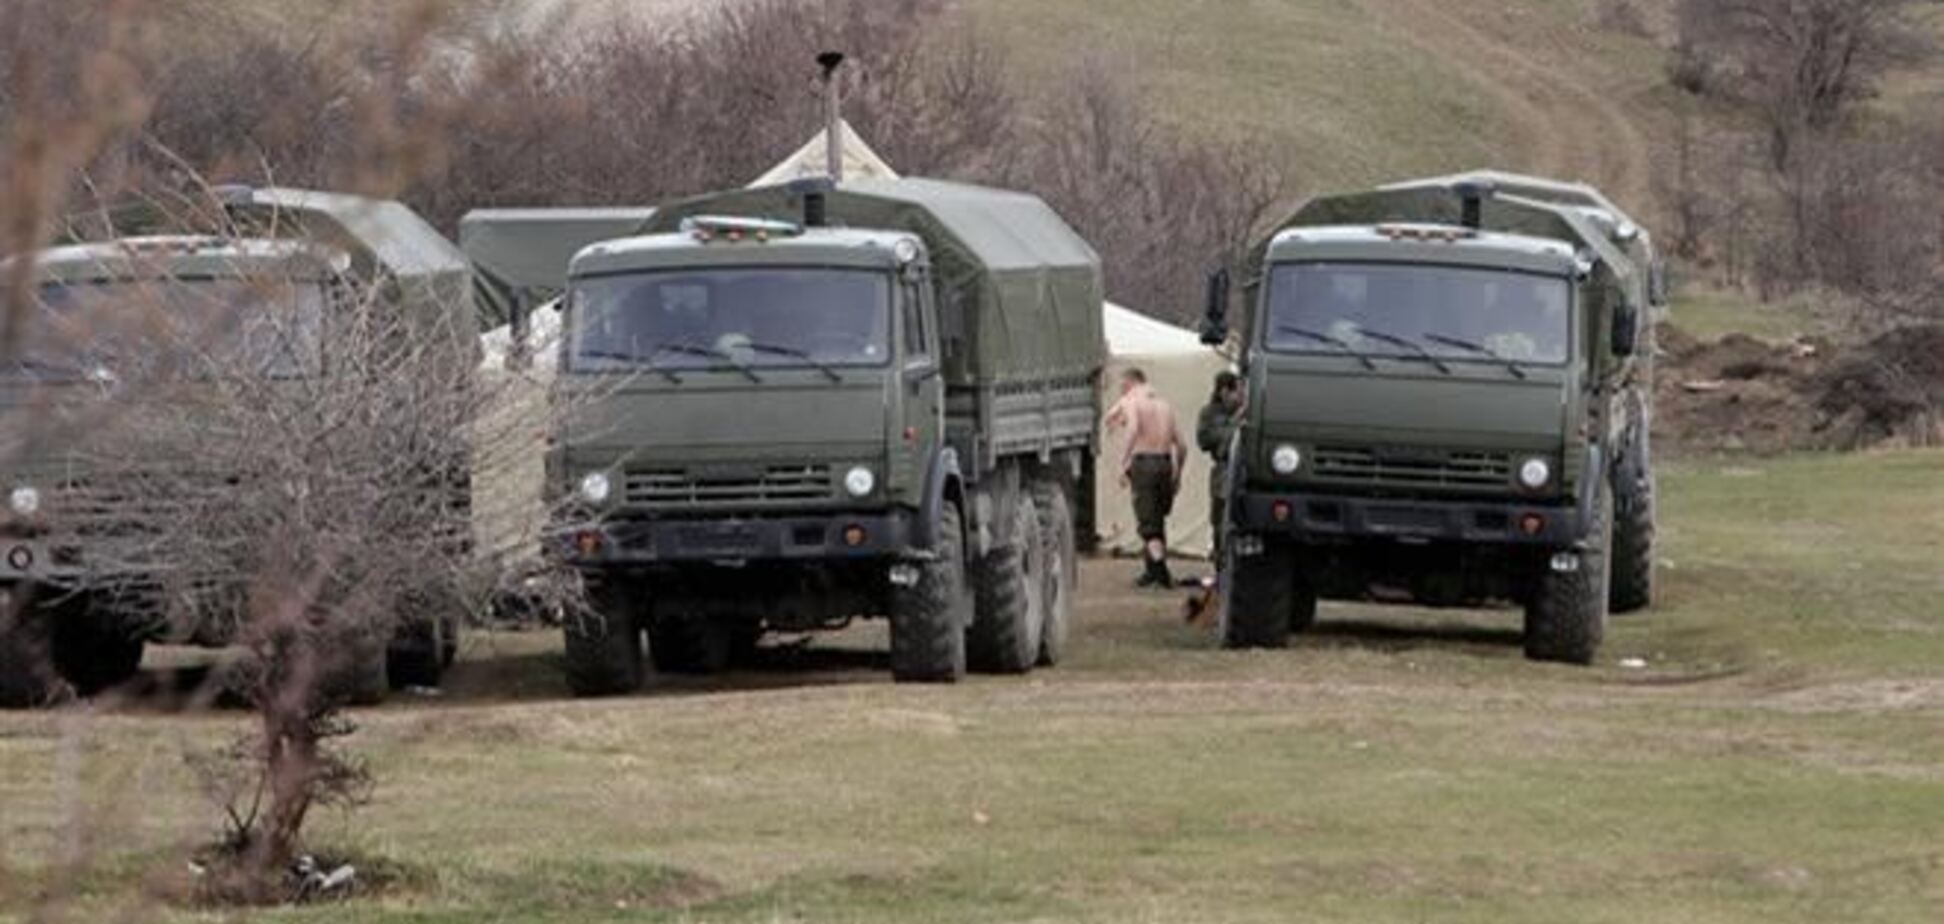 РФ готова до лета передать Украине всю военную технику из Крыма